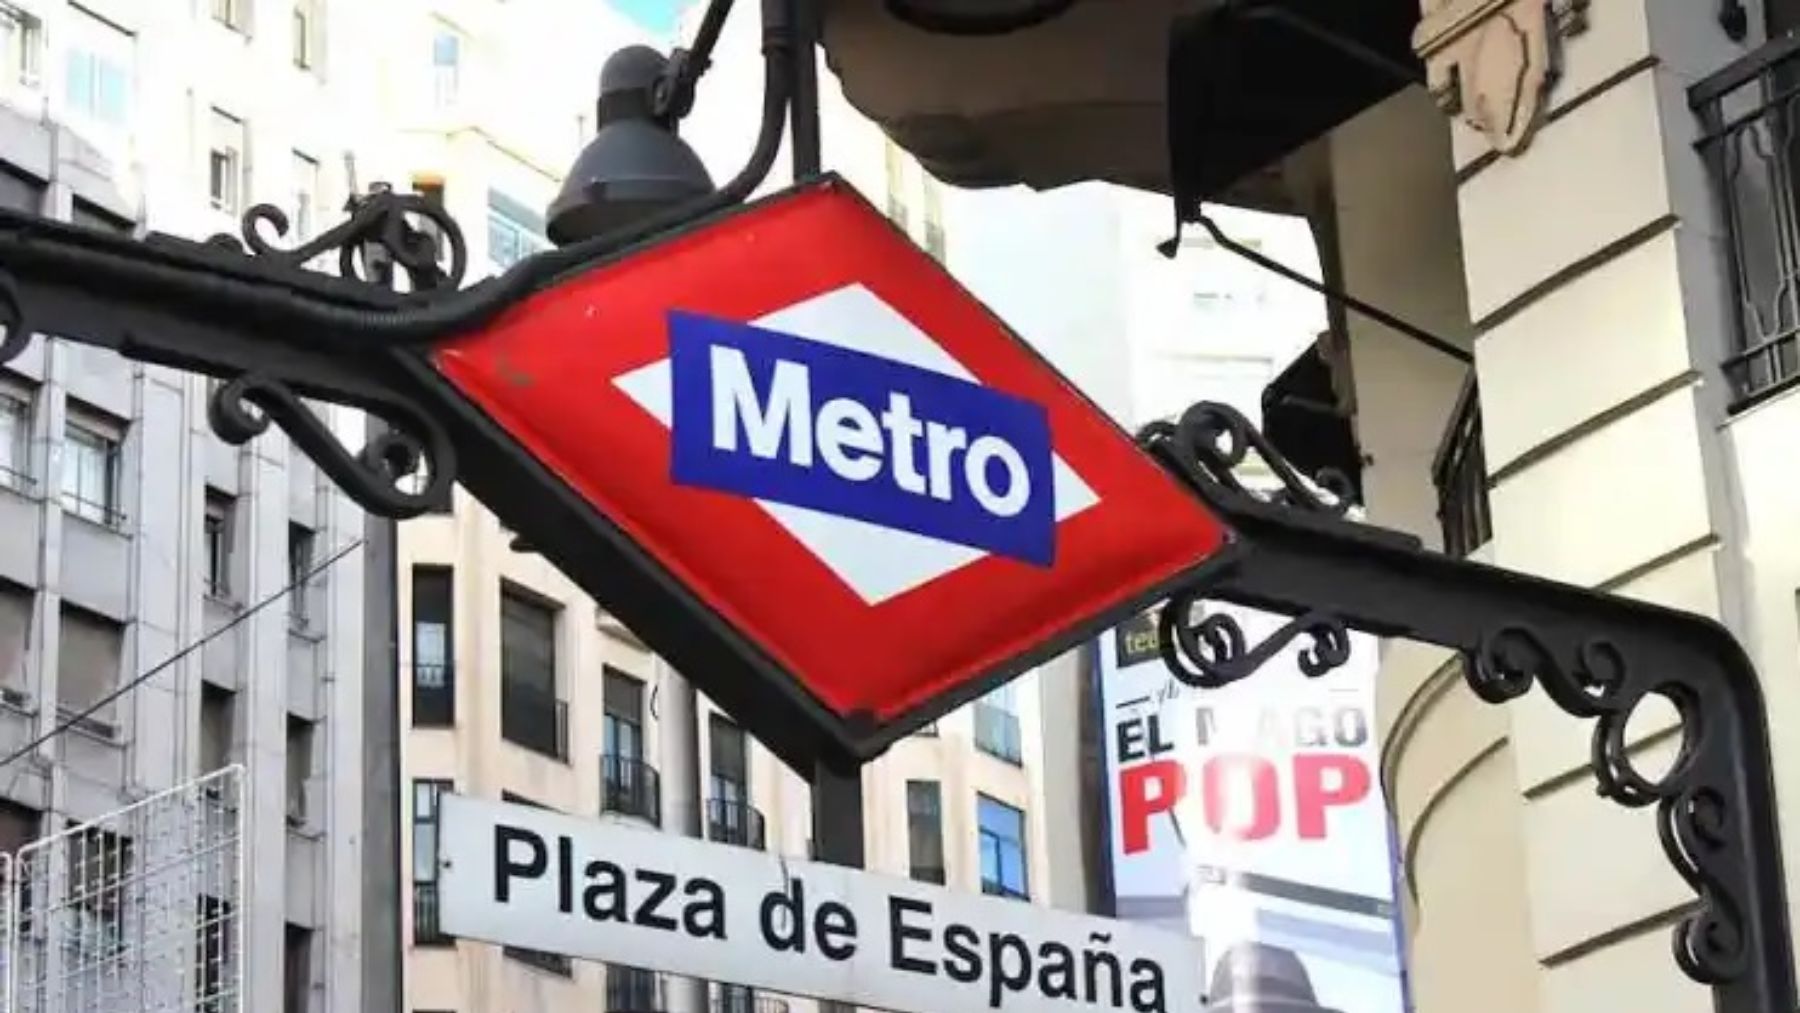 Datos curiosos sobre el metro de Madrid